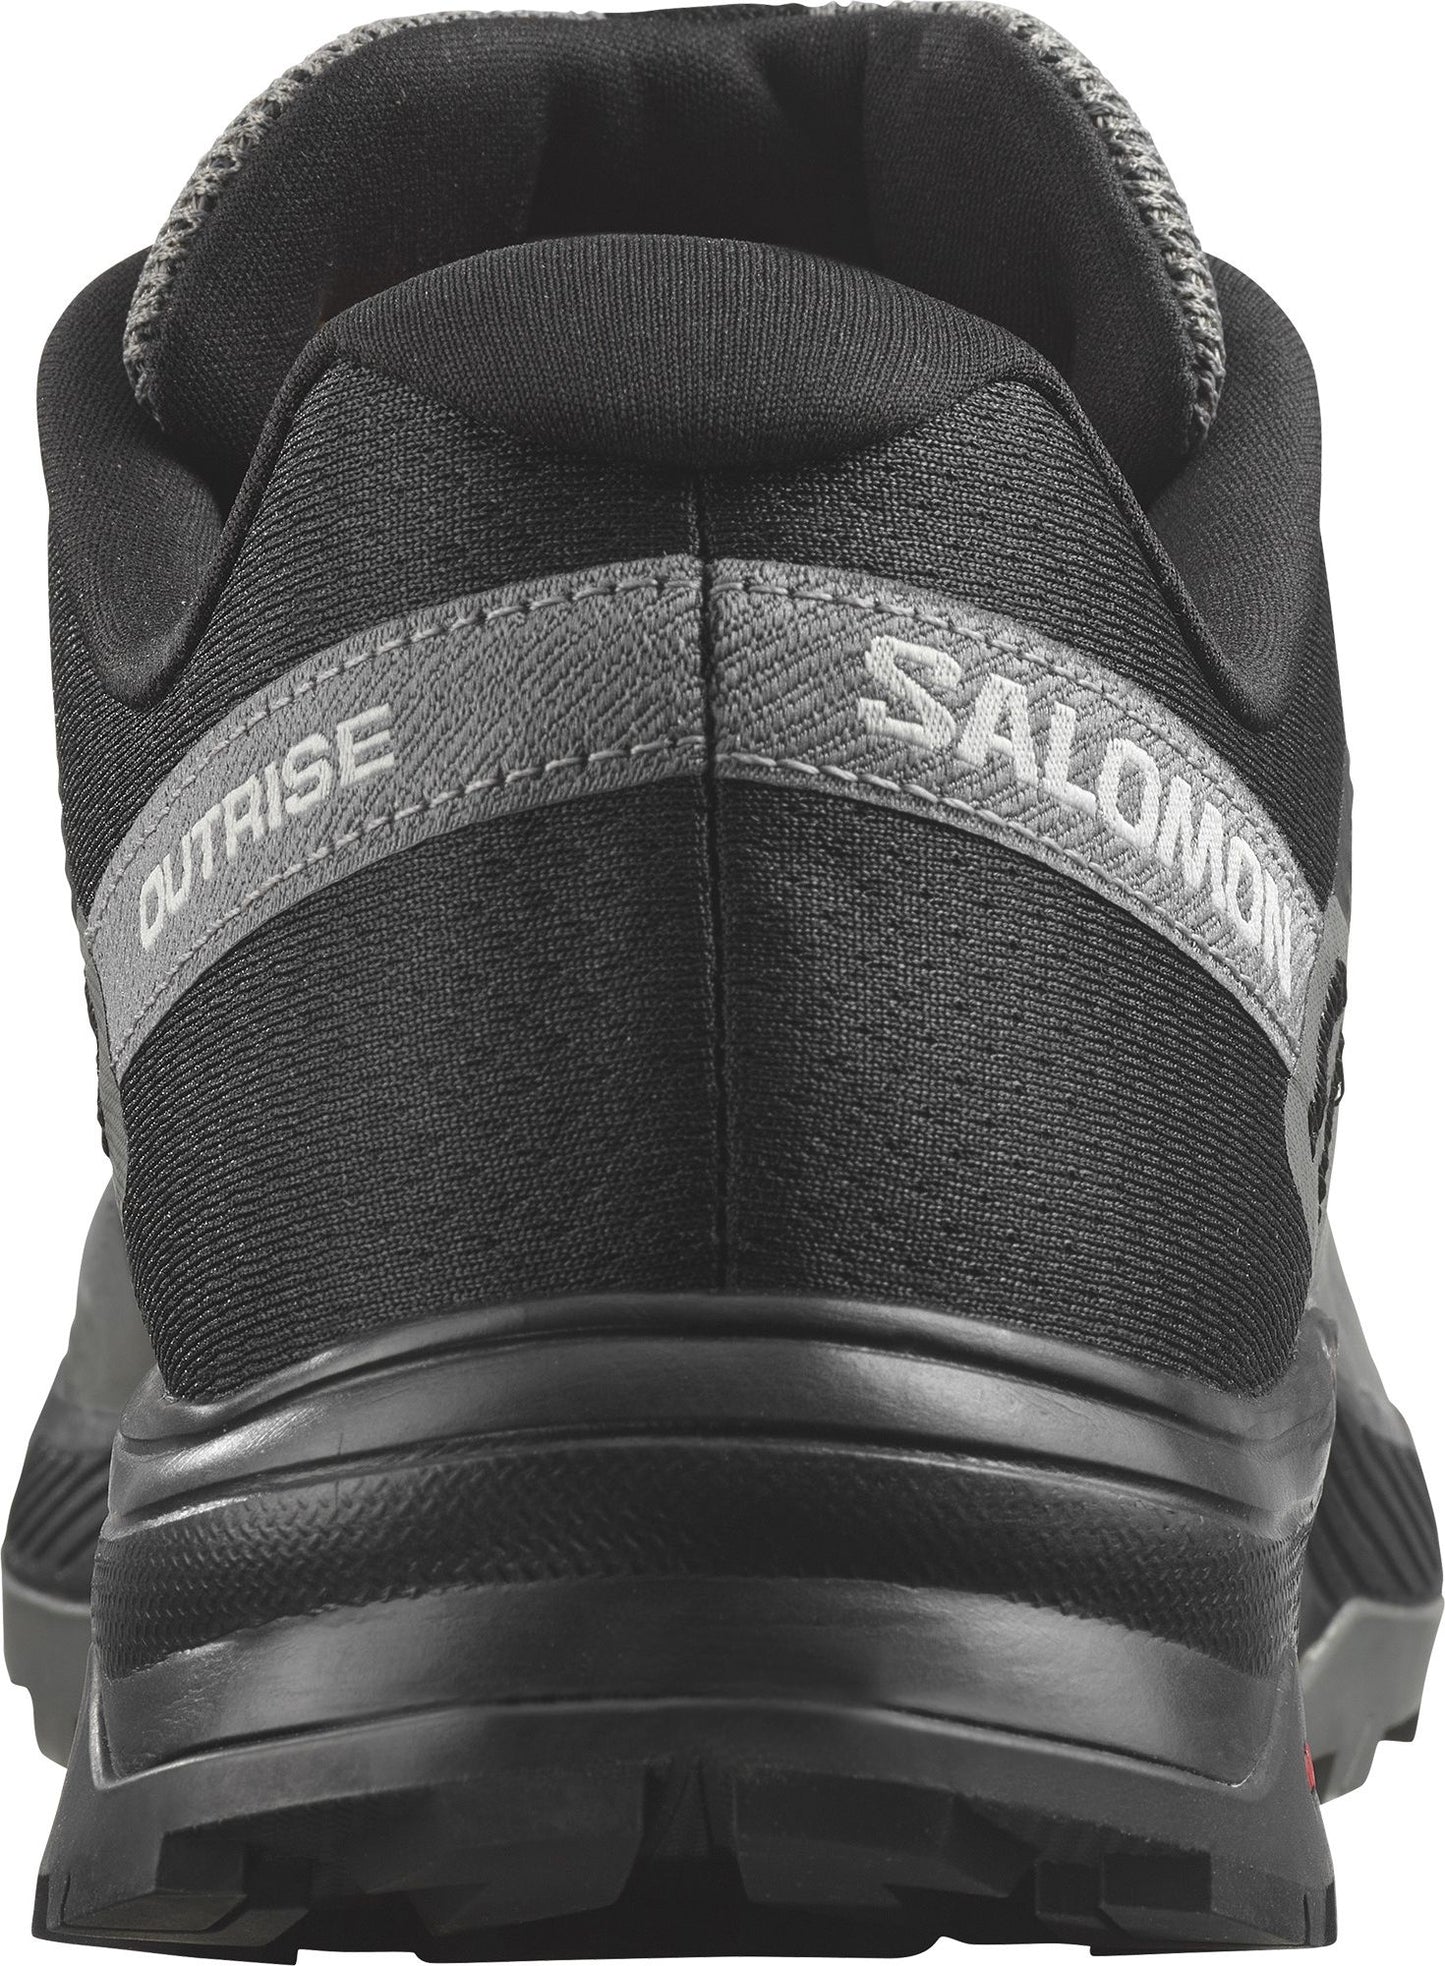 Salomon Shoes Outrise Black